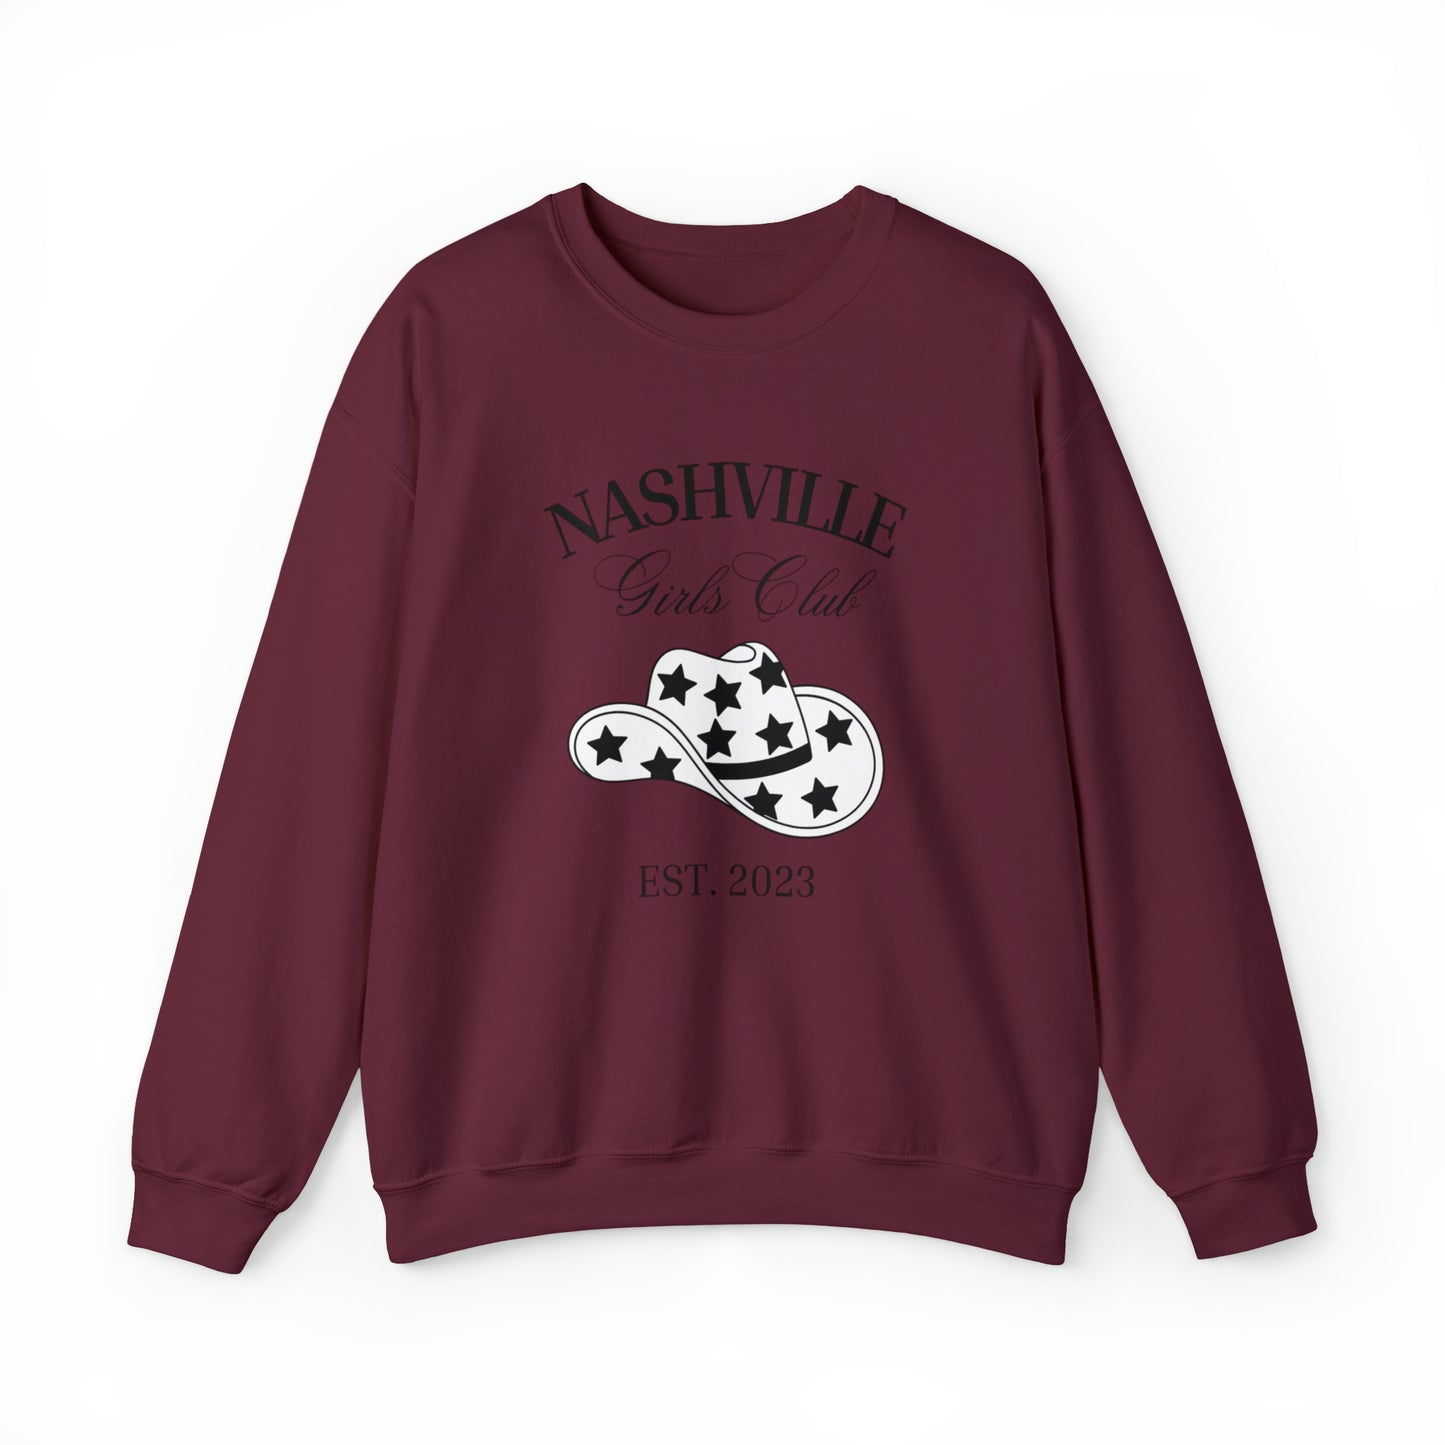 Nashville Girls Club Unisex Heavy Blend Crewneck Sweatshirt